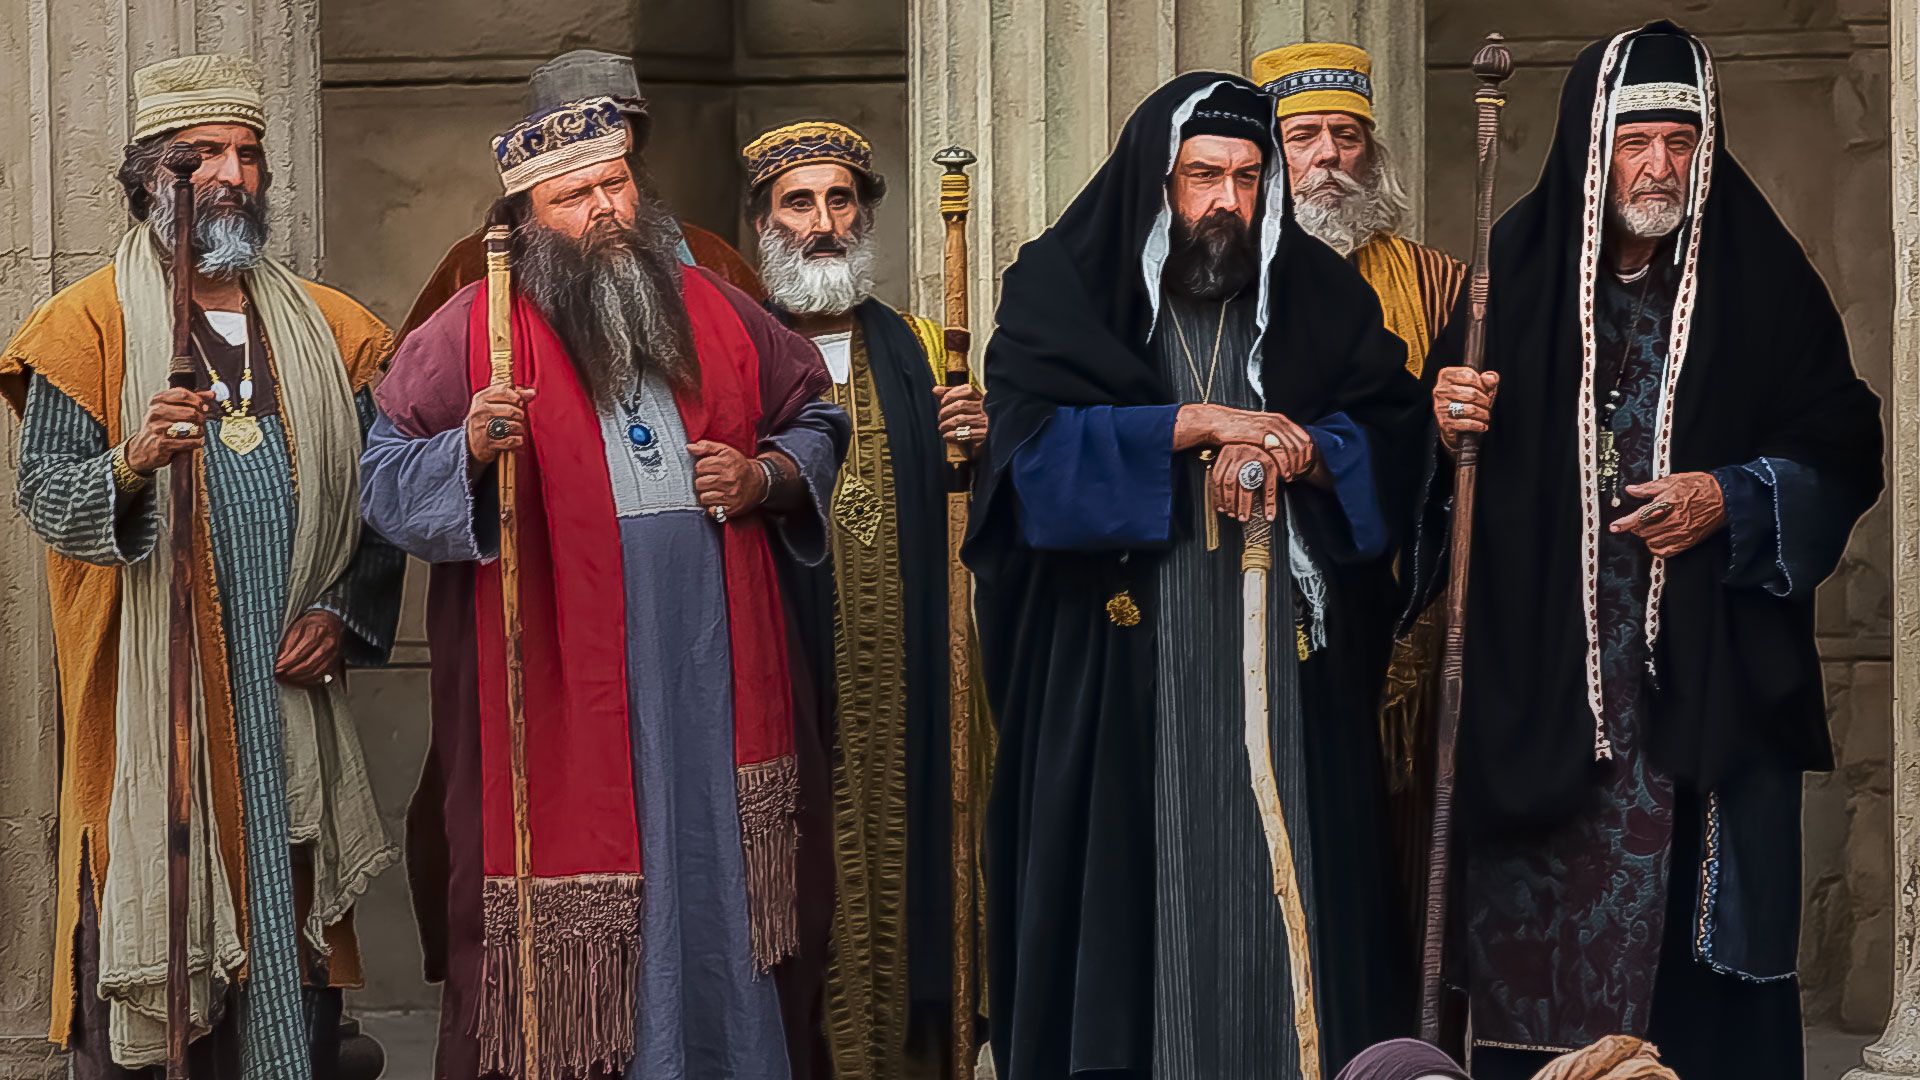 Promotional image for Как превзойти праведность фарисеев?